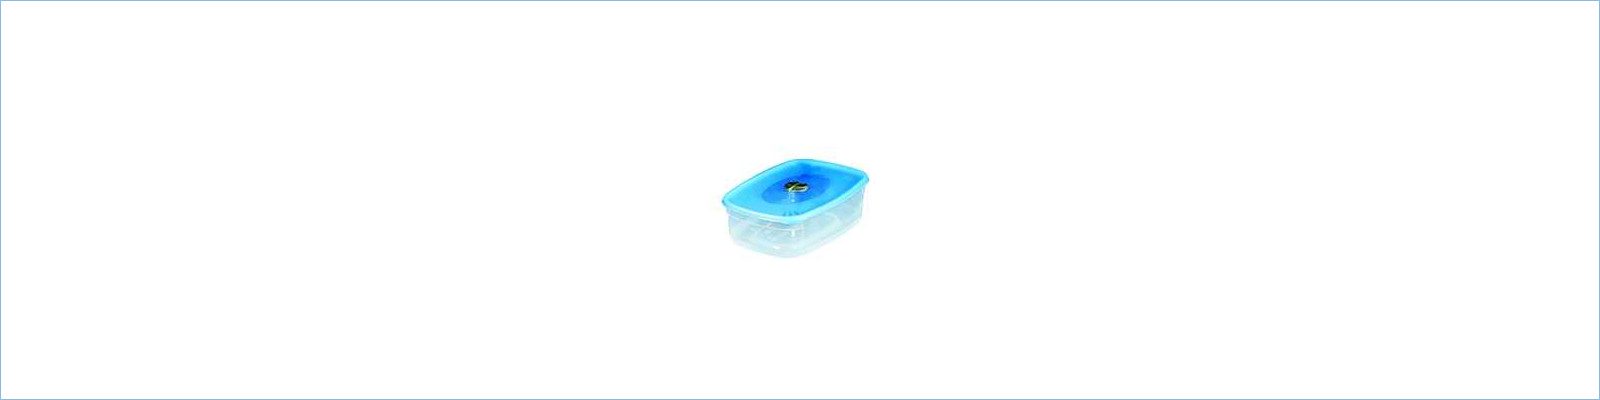 Емкость прямоугольная для СВЧ с паровыпускным клапаном 0,75 л. ООО Пластик-Репаблик Р2327